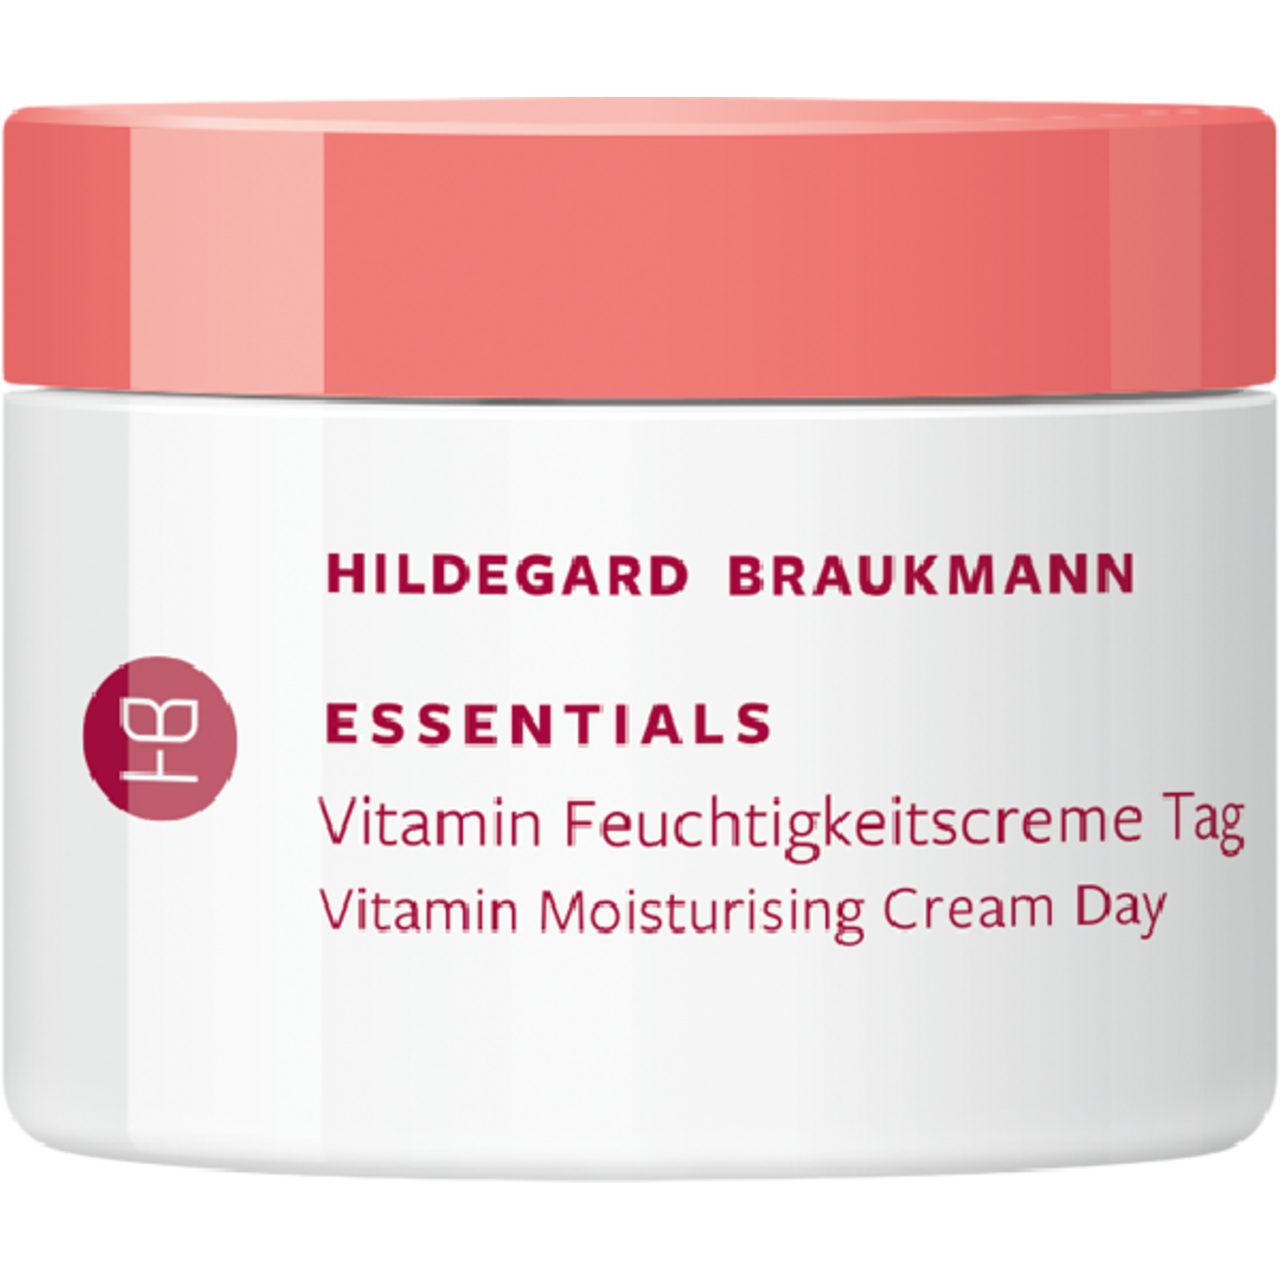 Hildegard Braukmann Tagescreme Essentials Vitamin Feuchtigkeitscreme Tag